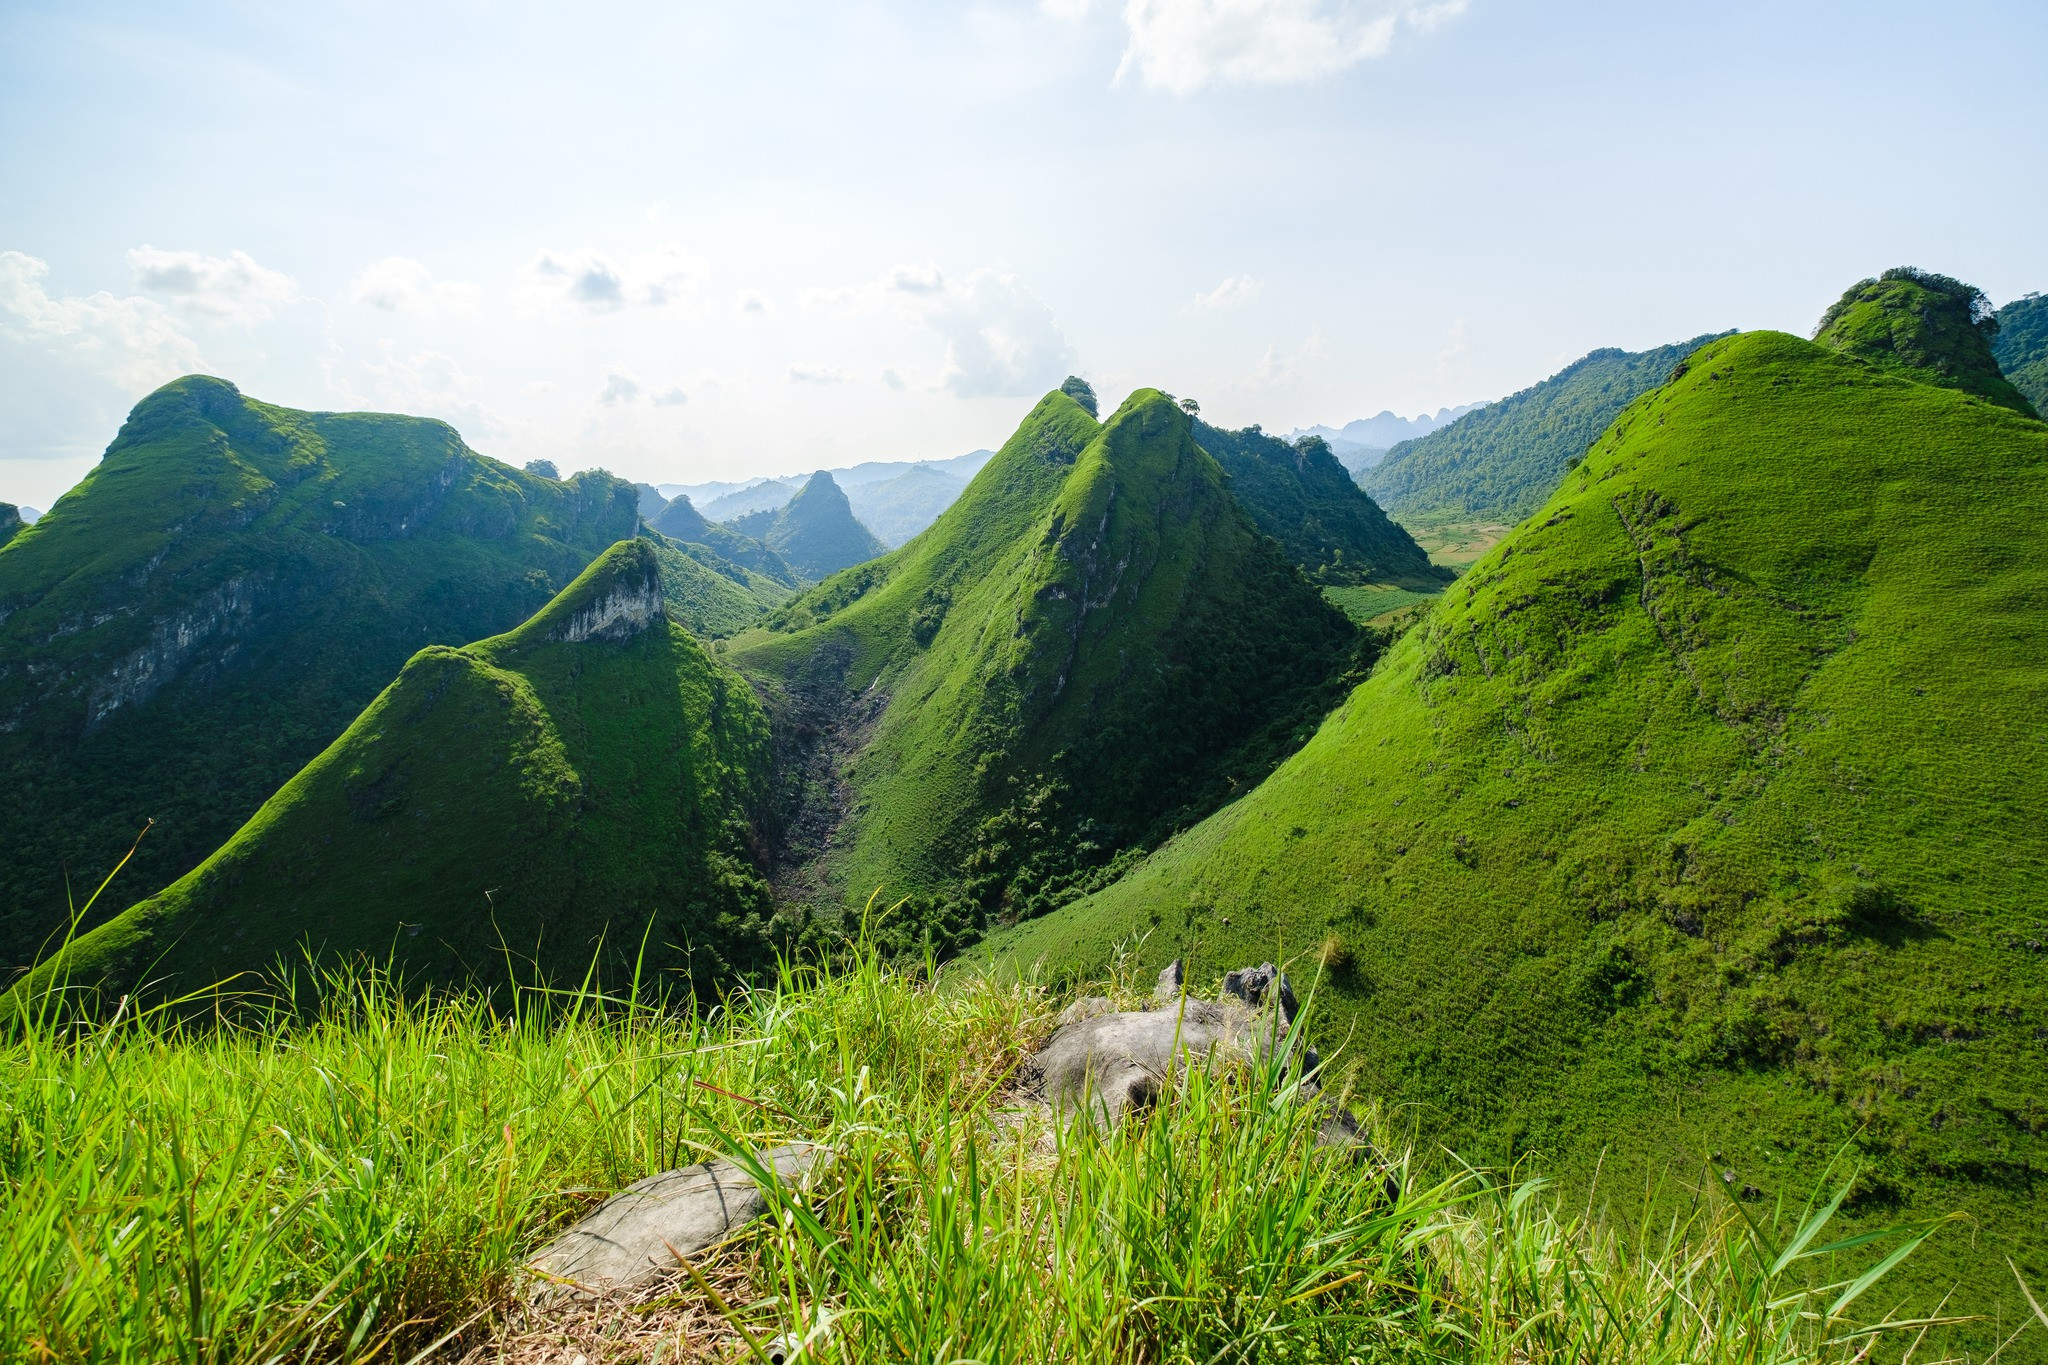 Mê mẩn đồi cỏ xanh rì, check-in siêu đẹp tại địa điểm này ở Cao Bằng- Ảnh 1.